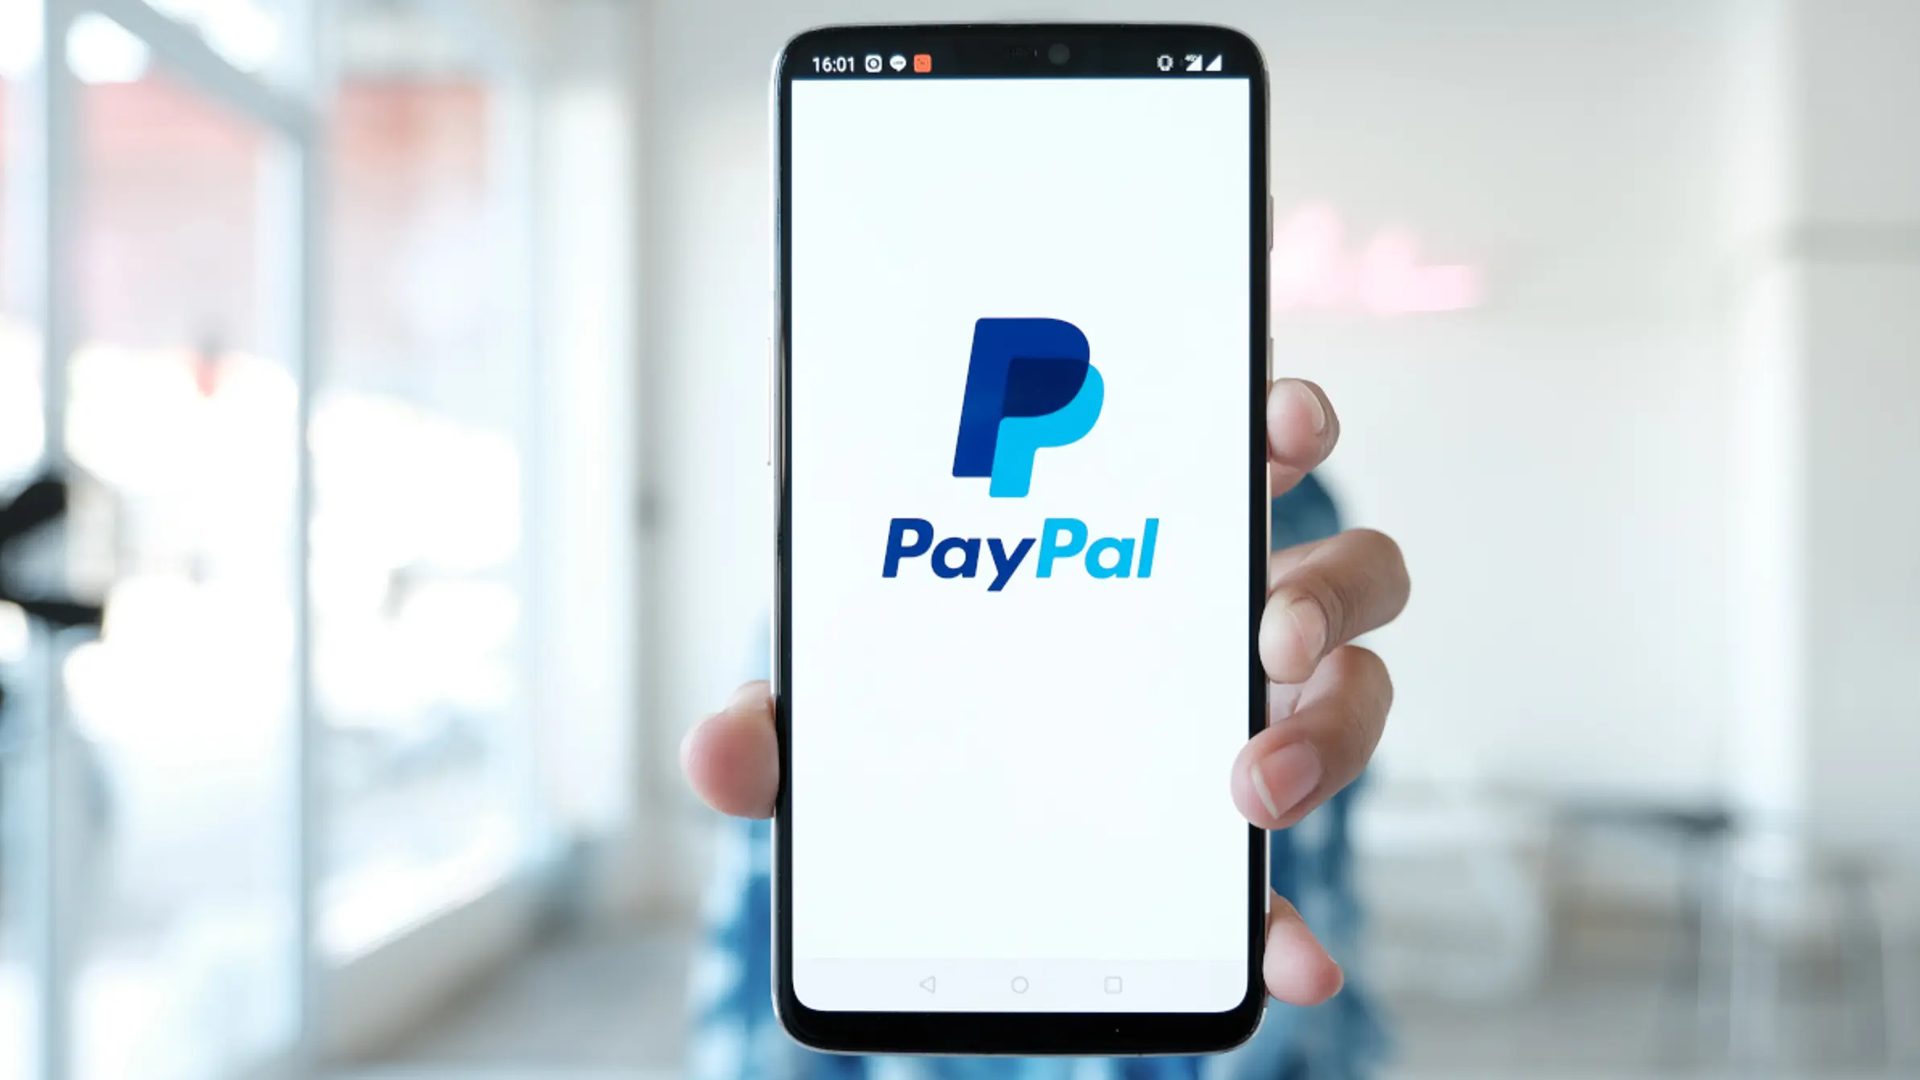 De beste toepassingen voor PayPal in 2022